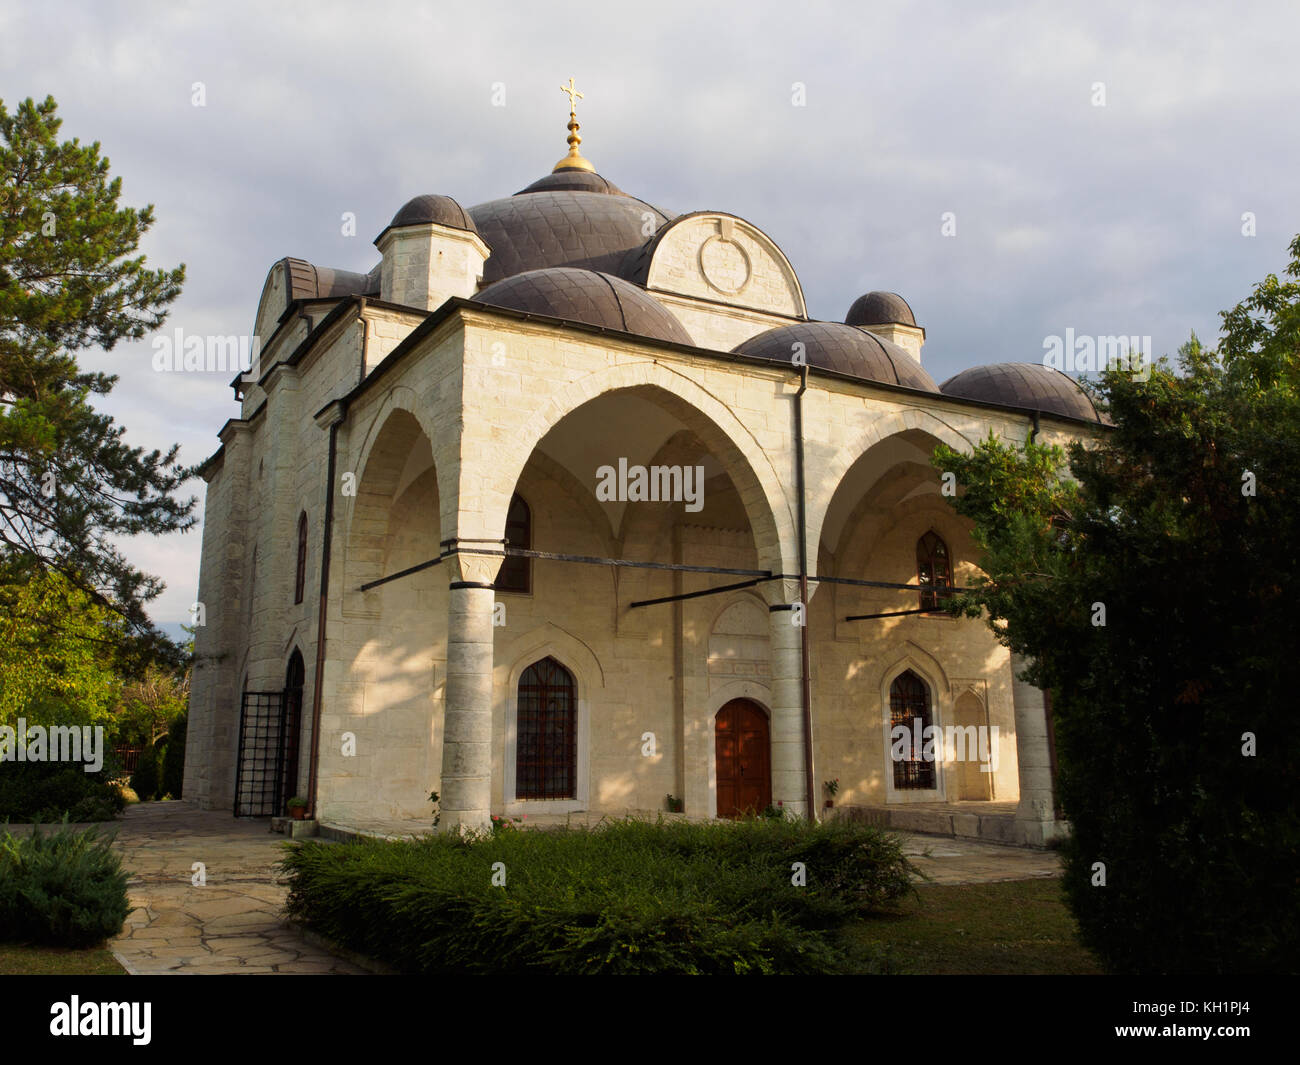 The Uzundzhovo Church in Uzundzhovo village, Haskovo. Stock Photo